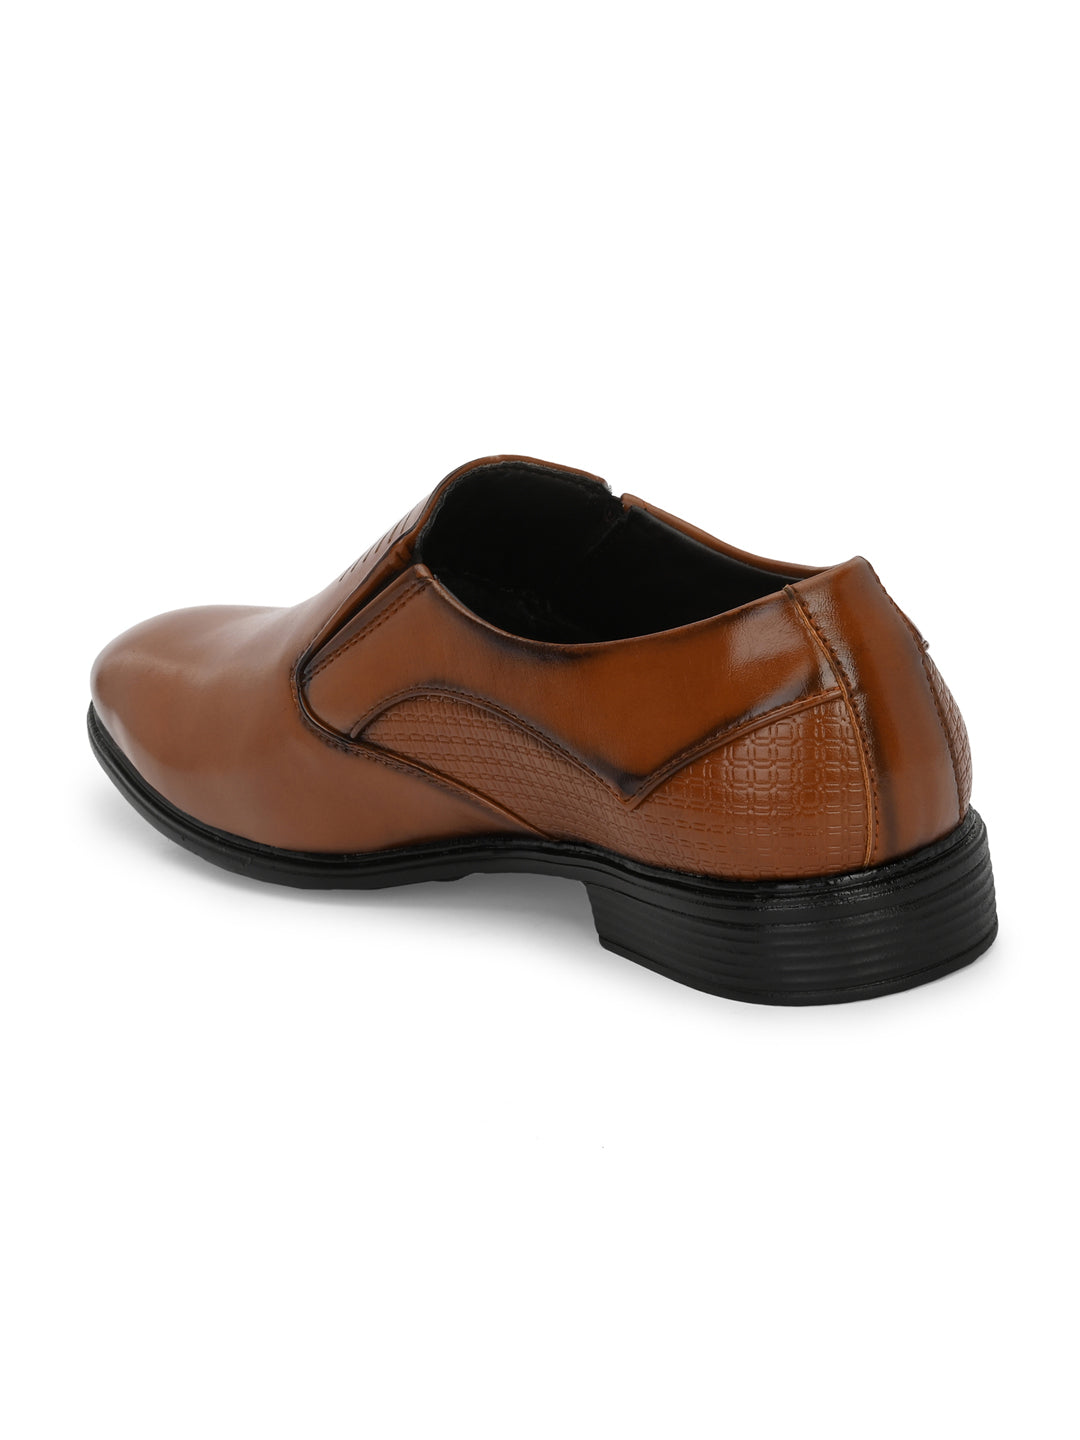 Guava Men's EliteEase Semi-Formal Slip-On Shoes - Tan GV15JA861